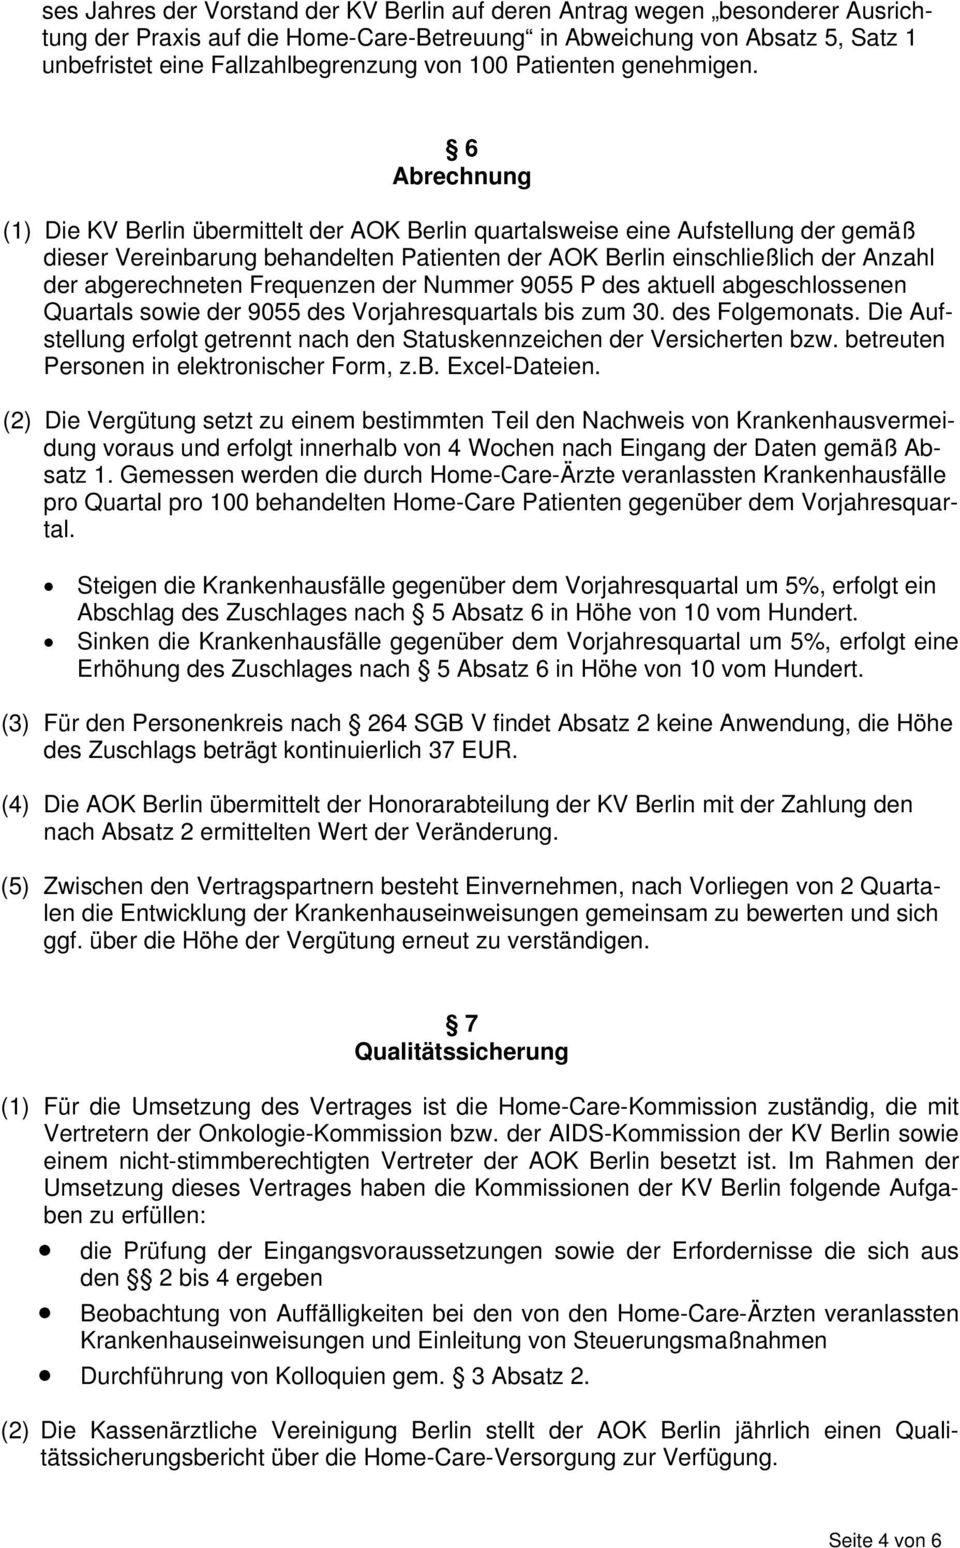 6 Abrechnung (1) Die KV Berlin übermittelt der AOK Berlin quartalsweise eine Aufstellung der gemäß dieser Vereinbarung behandelten Patienten der AOK Berlin einschließlich der Anzahl der abgerechneten